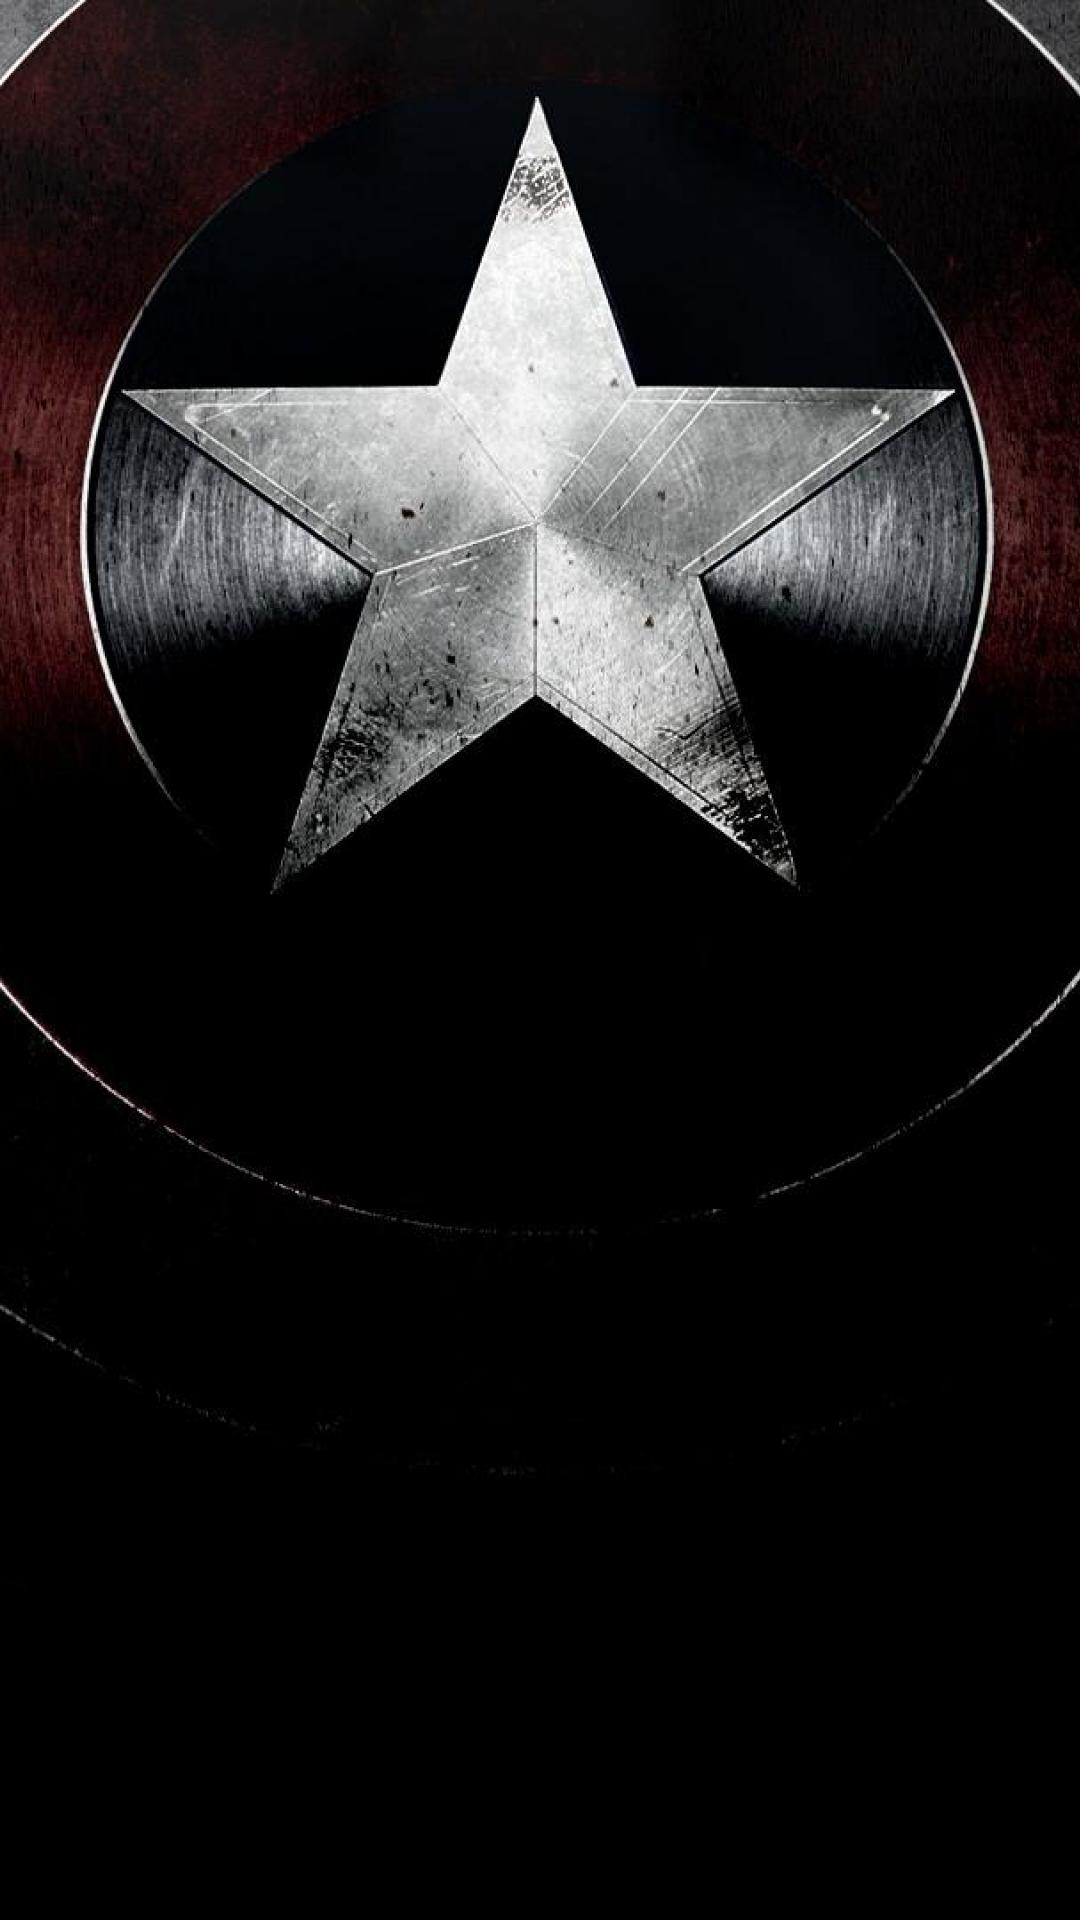 캡틴 아메리카의 hd 벽지 for mobile,어둠,별,검정색과 흰색,대칭,삽화